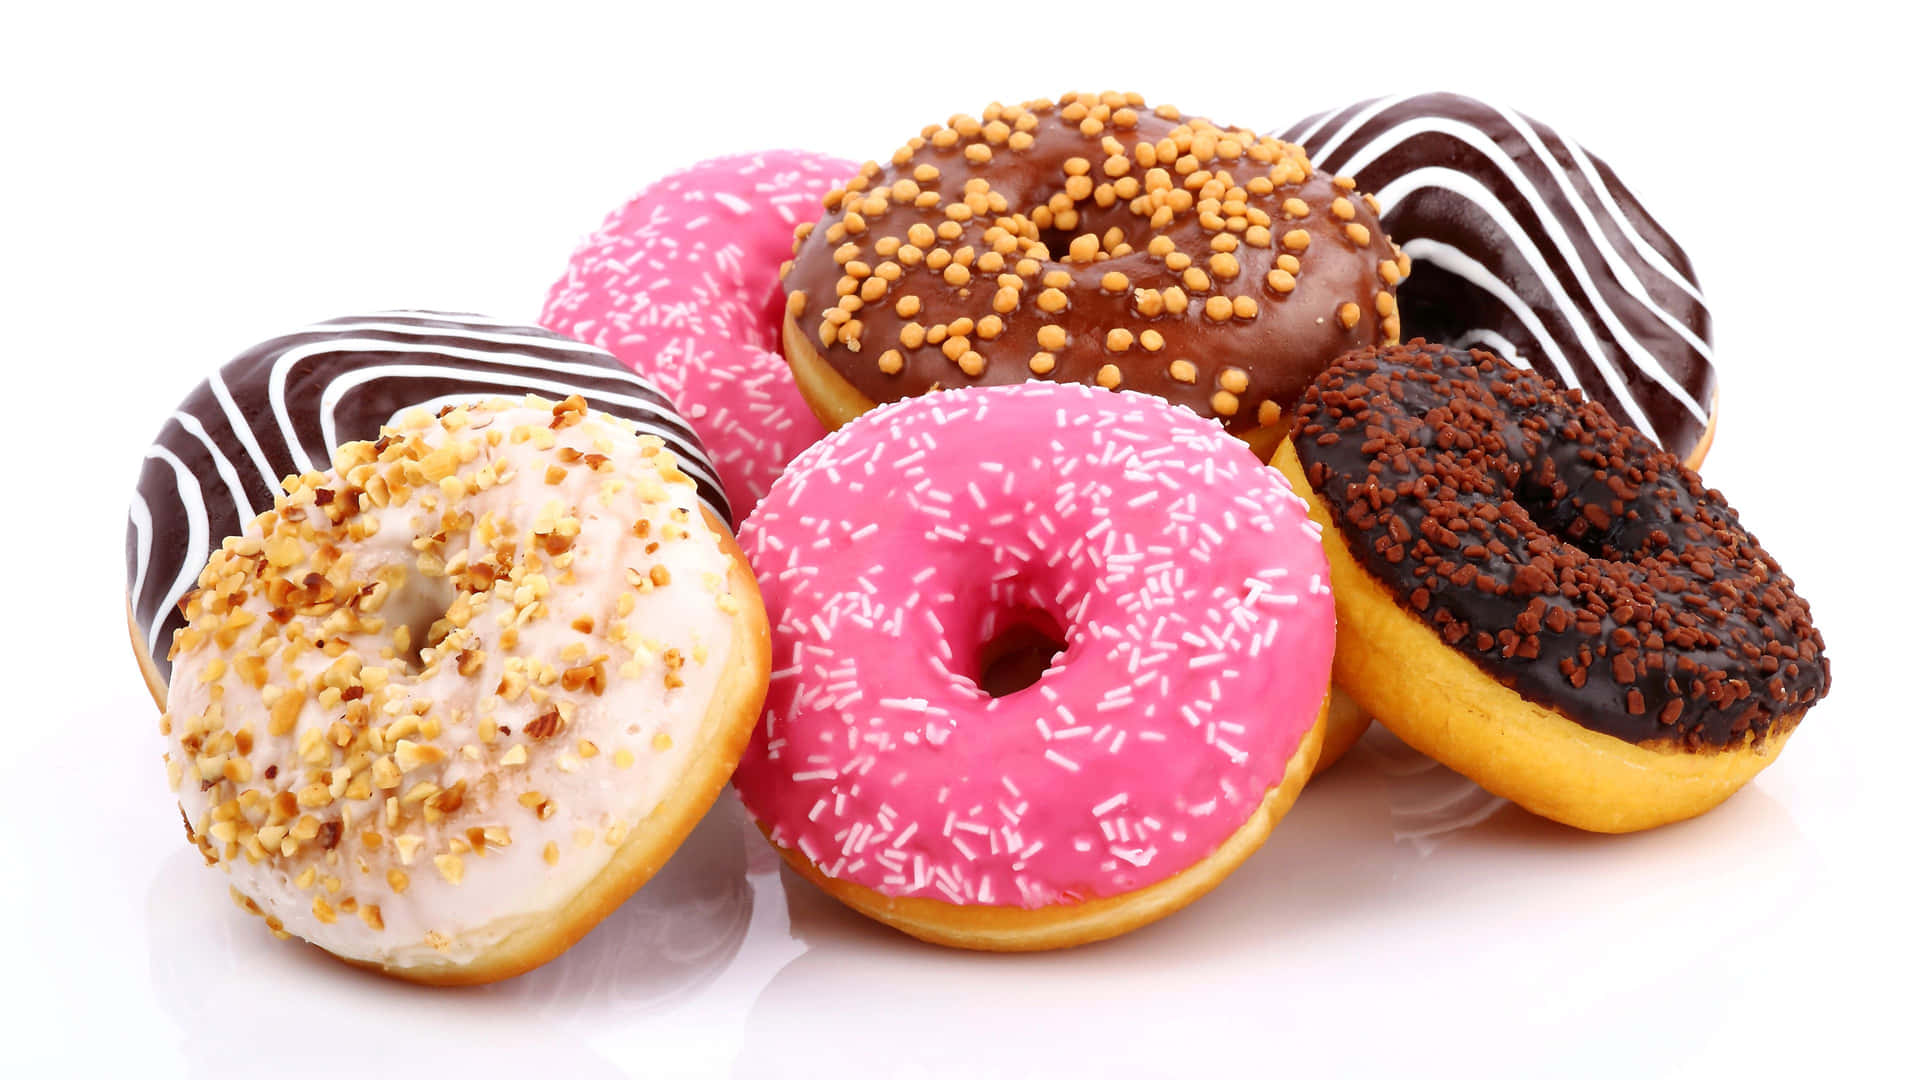 Fådin Weekend Igang Med Dunkin Donuts!